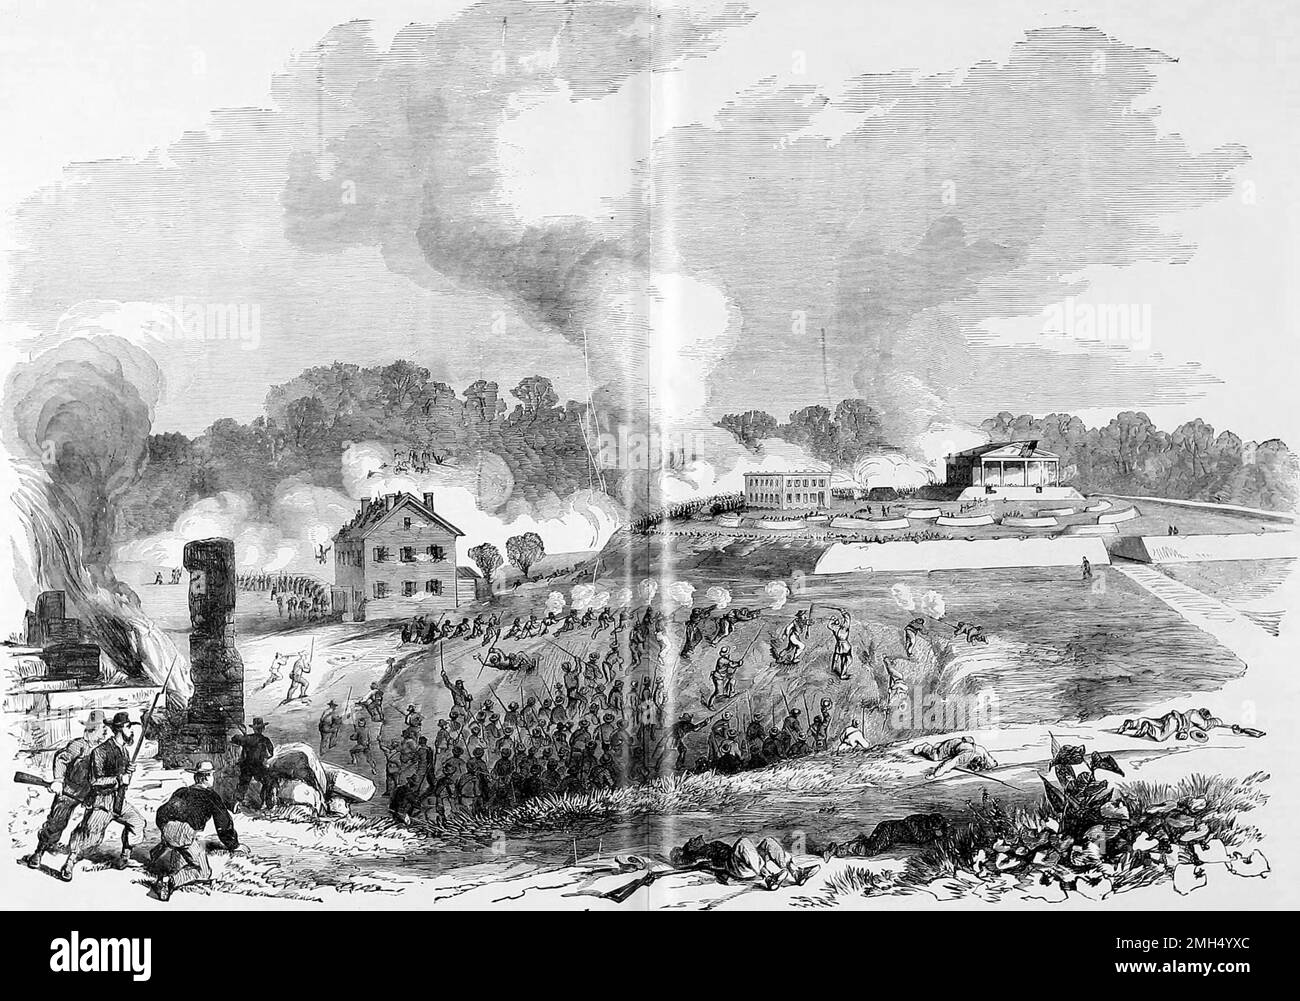 Le siège de Lexington, également connu sous le nom de la première bataille de Lexington ou de la bataille des balles de chanvre, était une bataille dans la guerre civile américaine des 13 septembre au 20, 1861. Elle a été gagnée par les forces confédérées sous le général Sterling Price. Banque D'Images